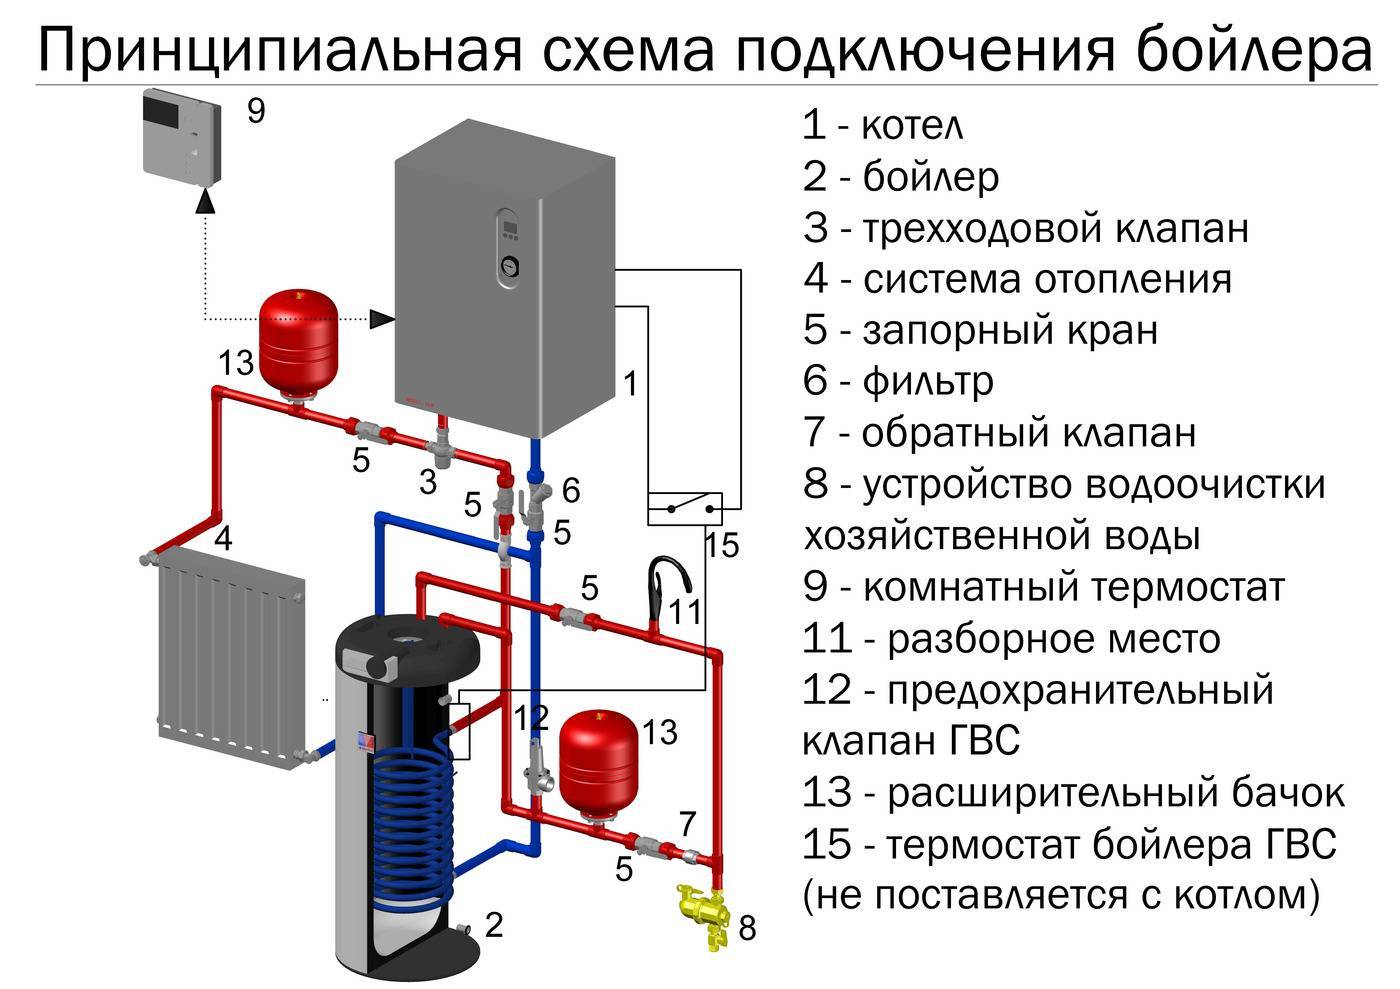 Как правильно подключить электрокотел к системе отопления